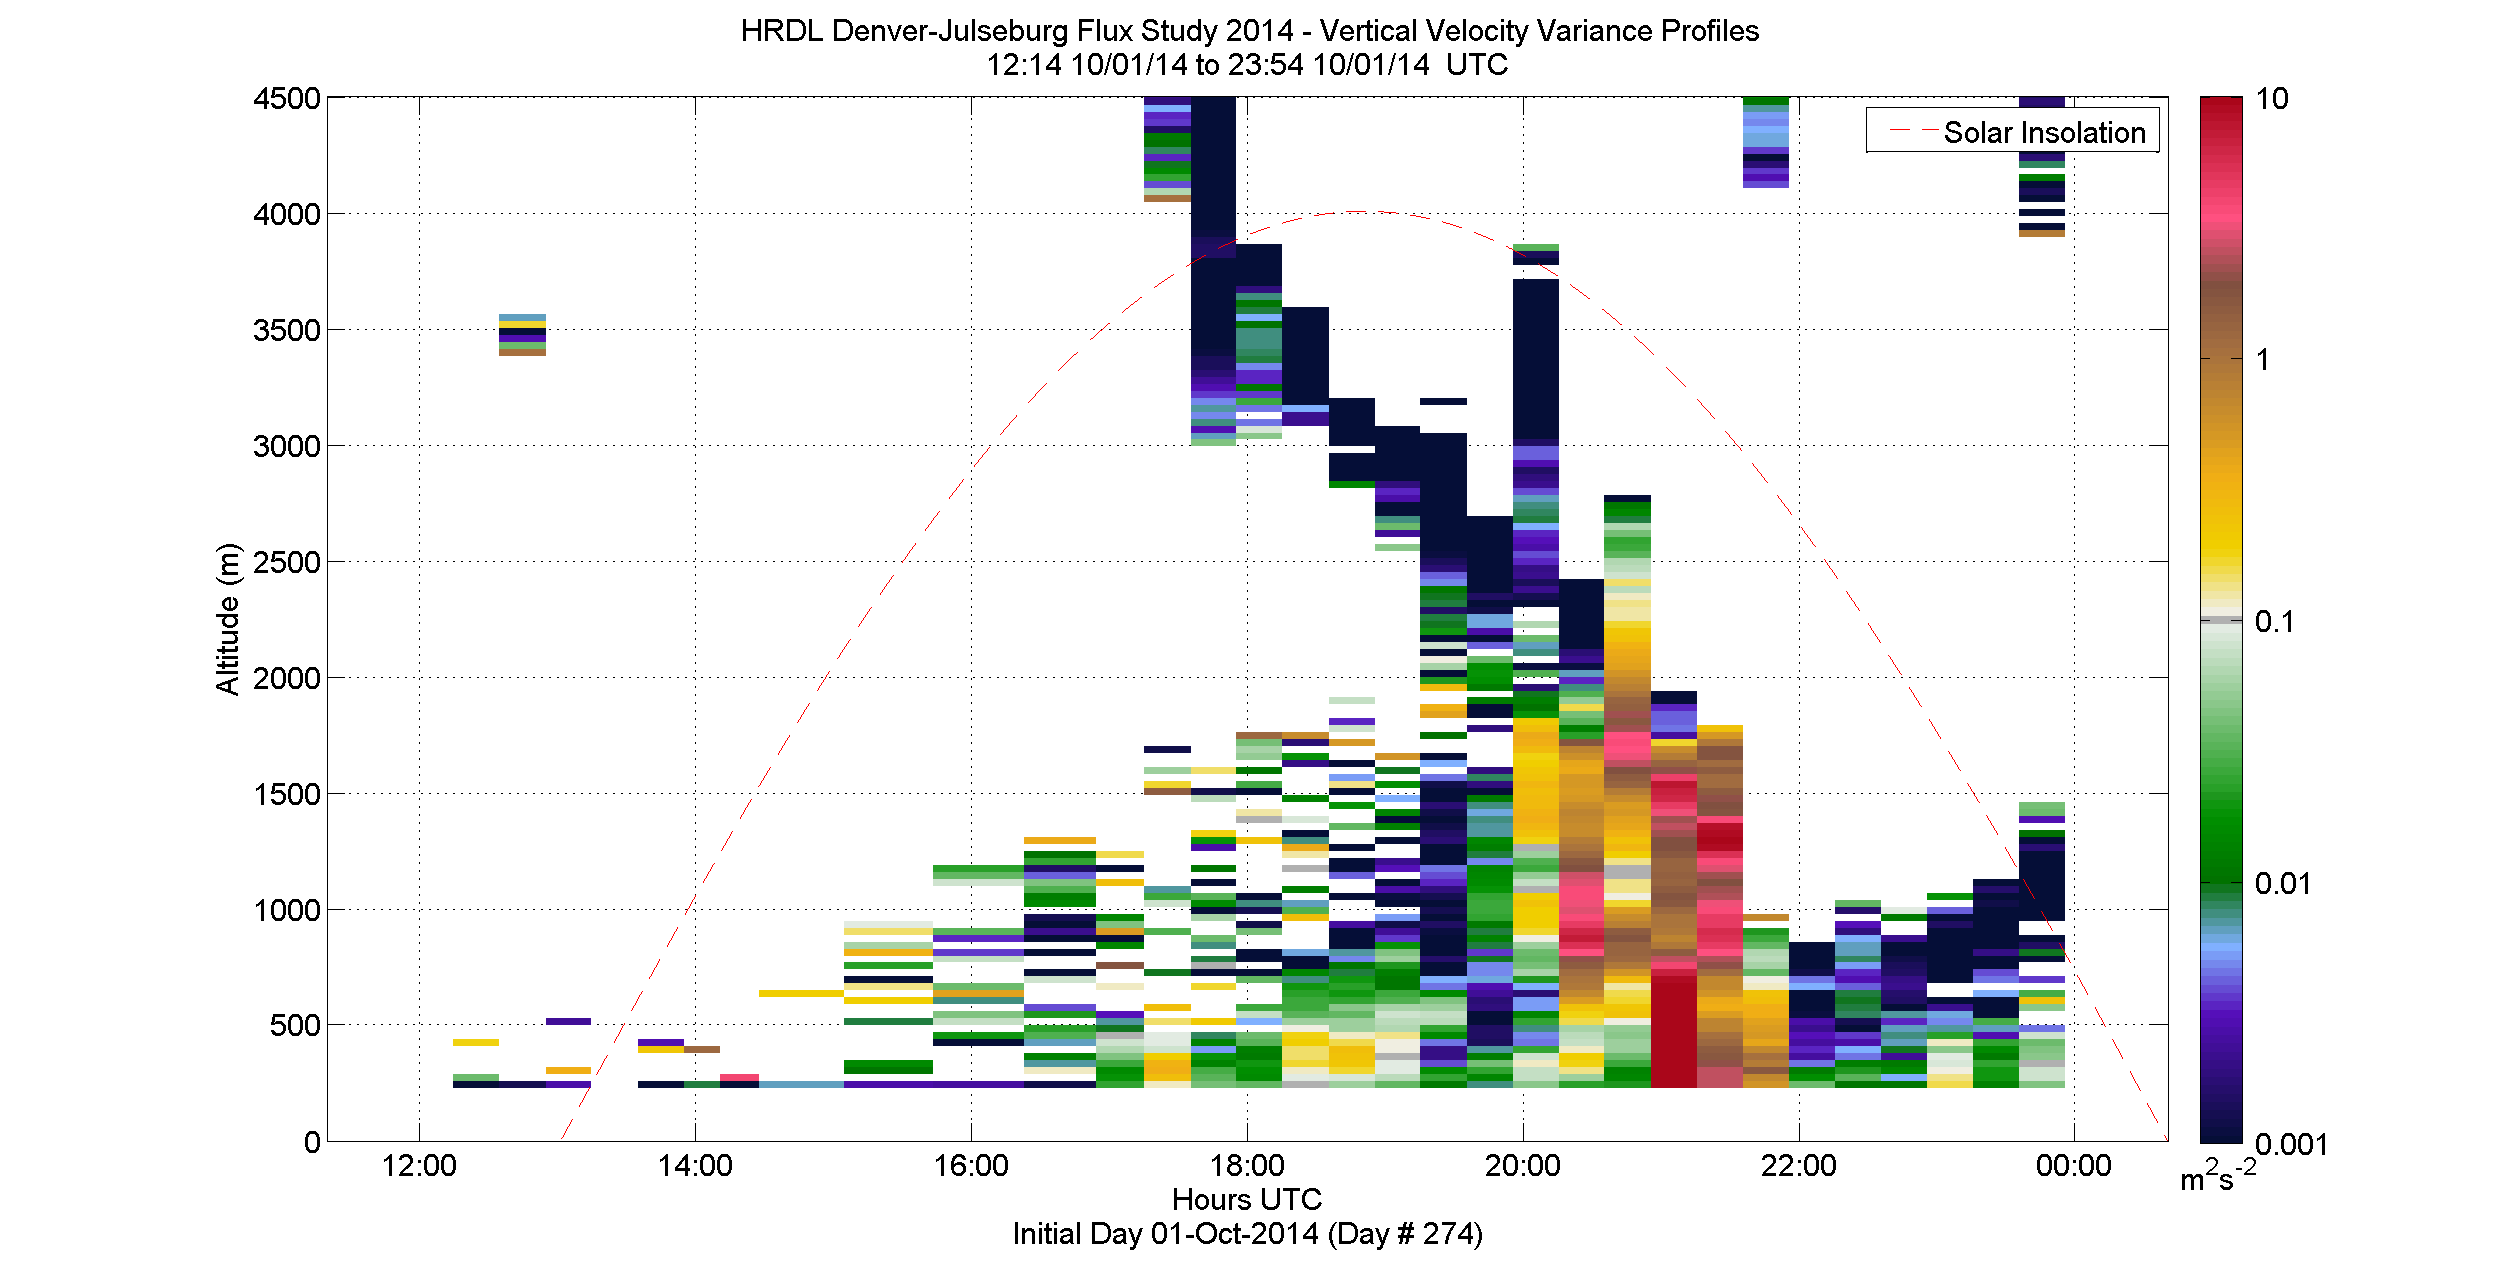 HRDL vertical variance profile - October 1 pm